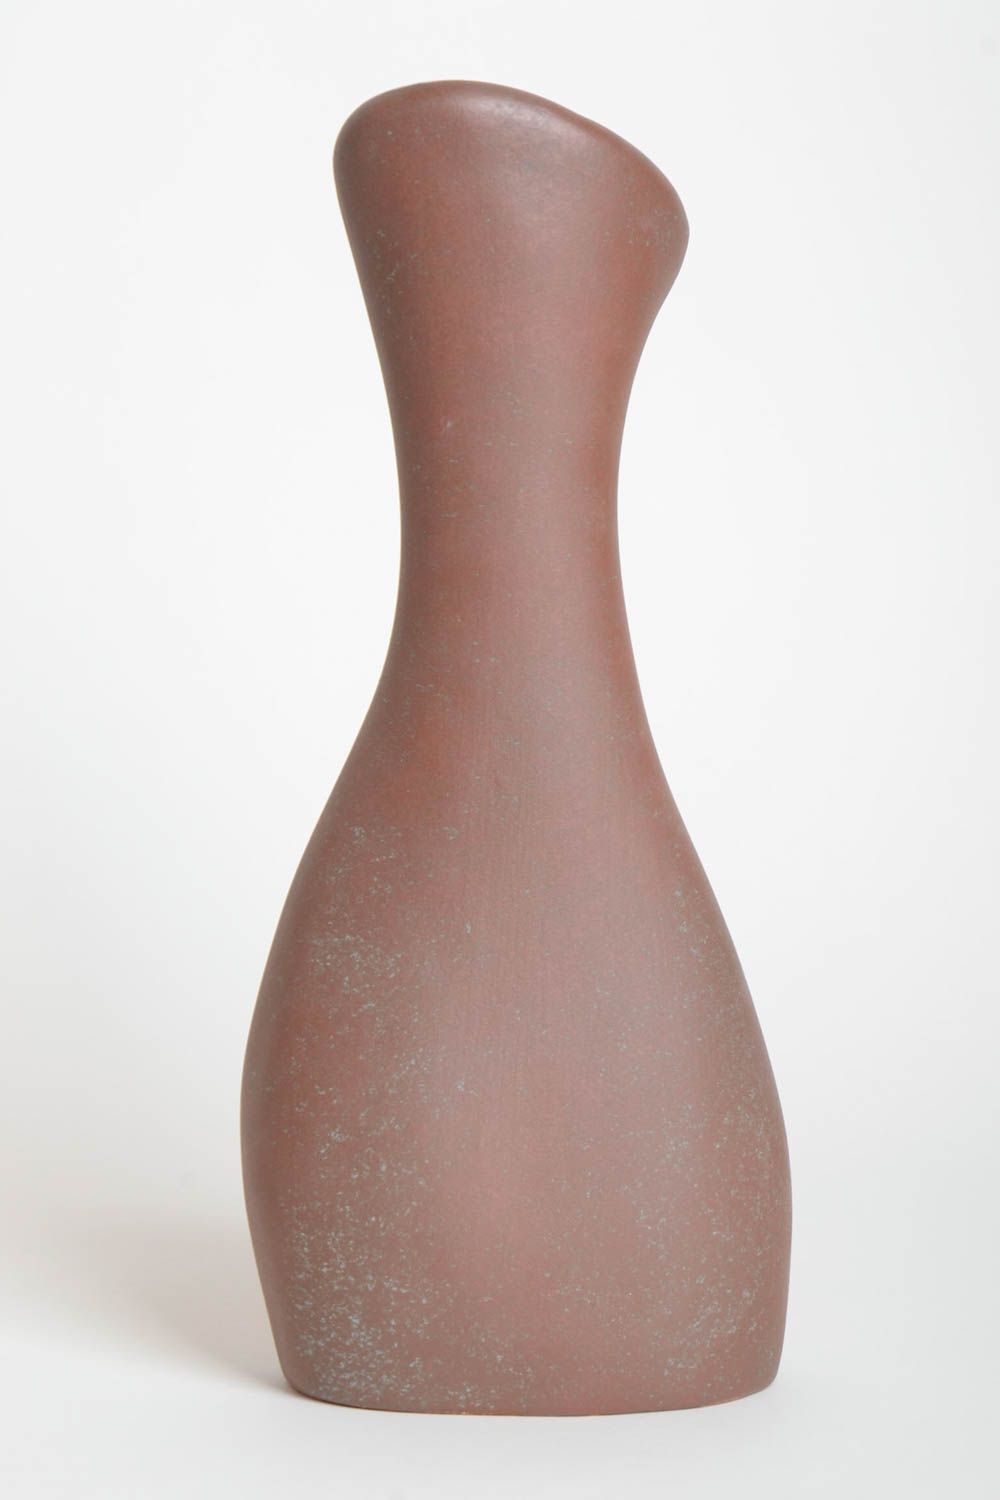 Handmade Keramik Vase Haus Deko hohe ausgefallene Vase mit originellem Muster  foto 4